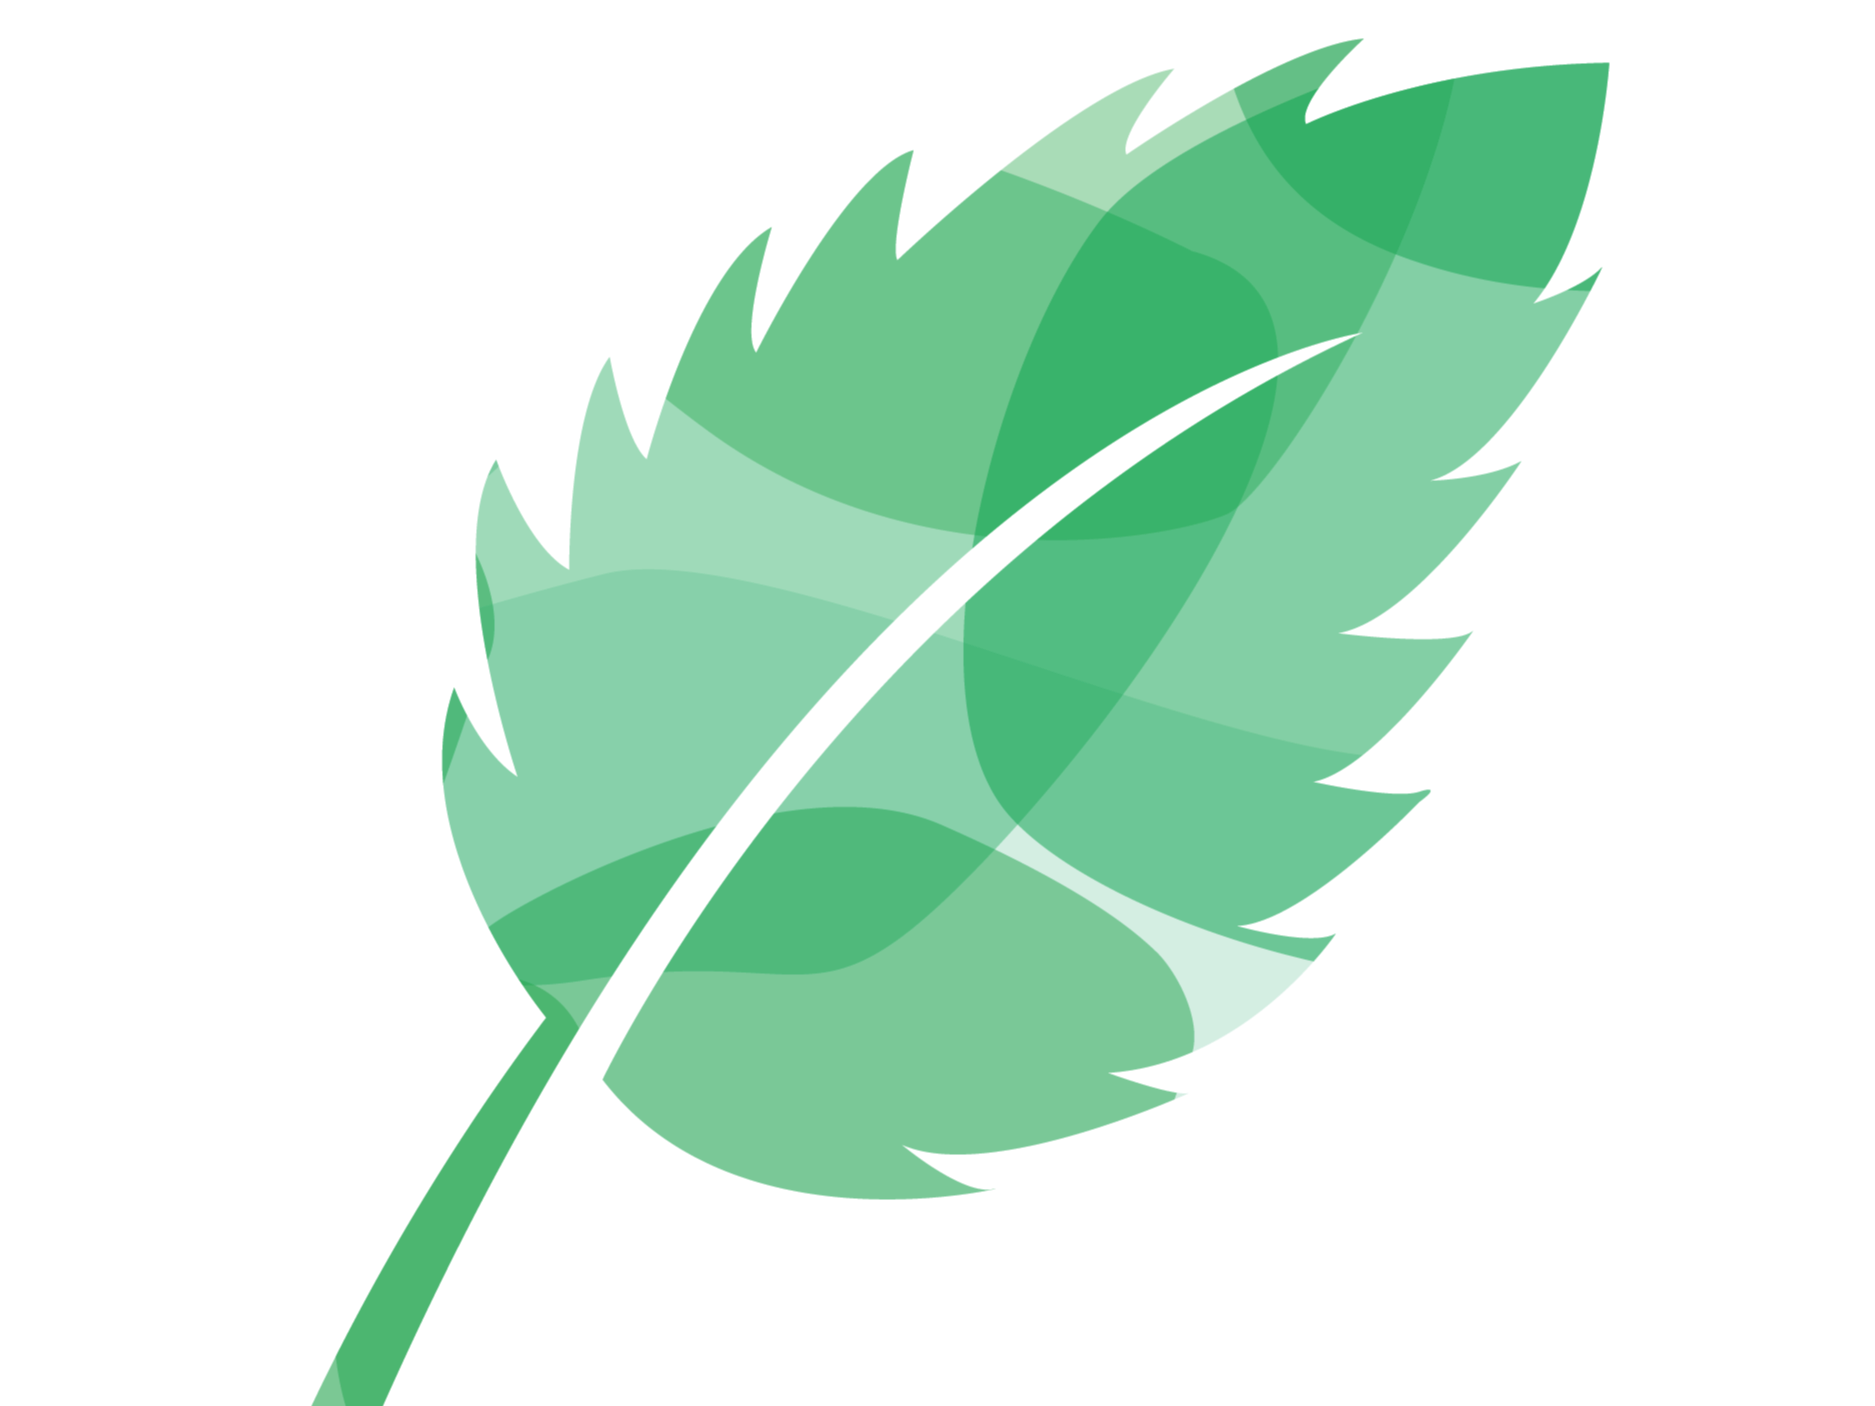 Green illustration of a leaf